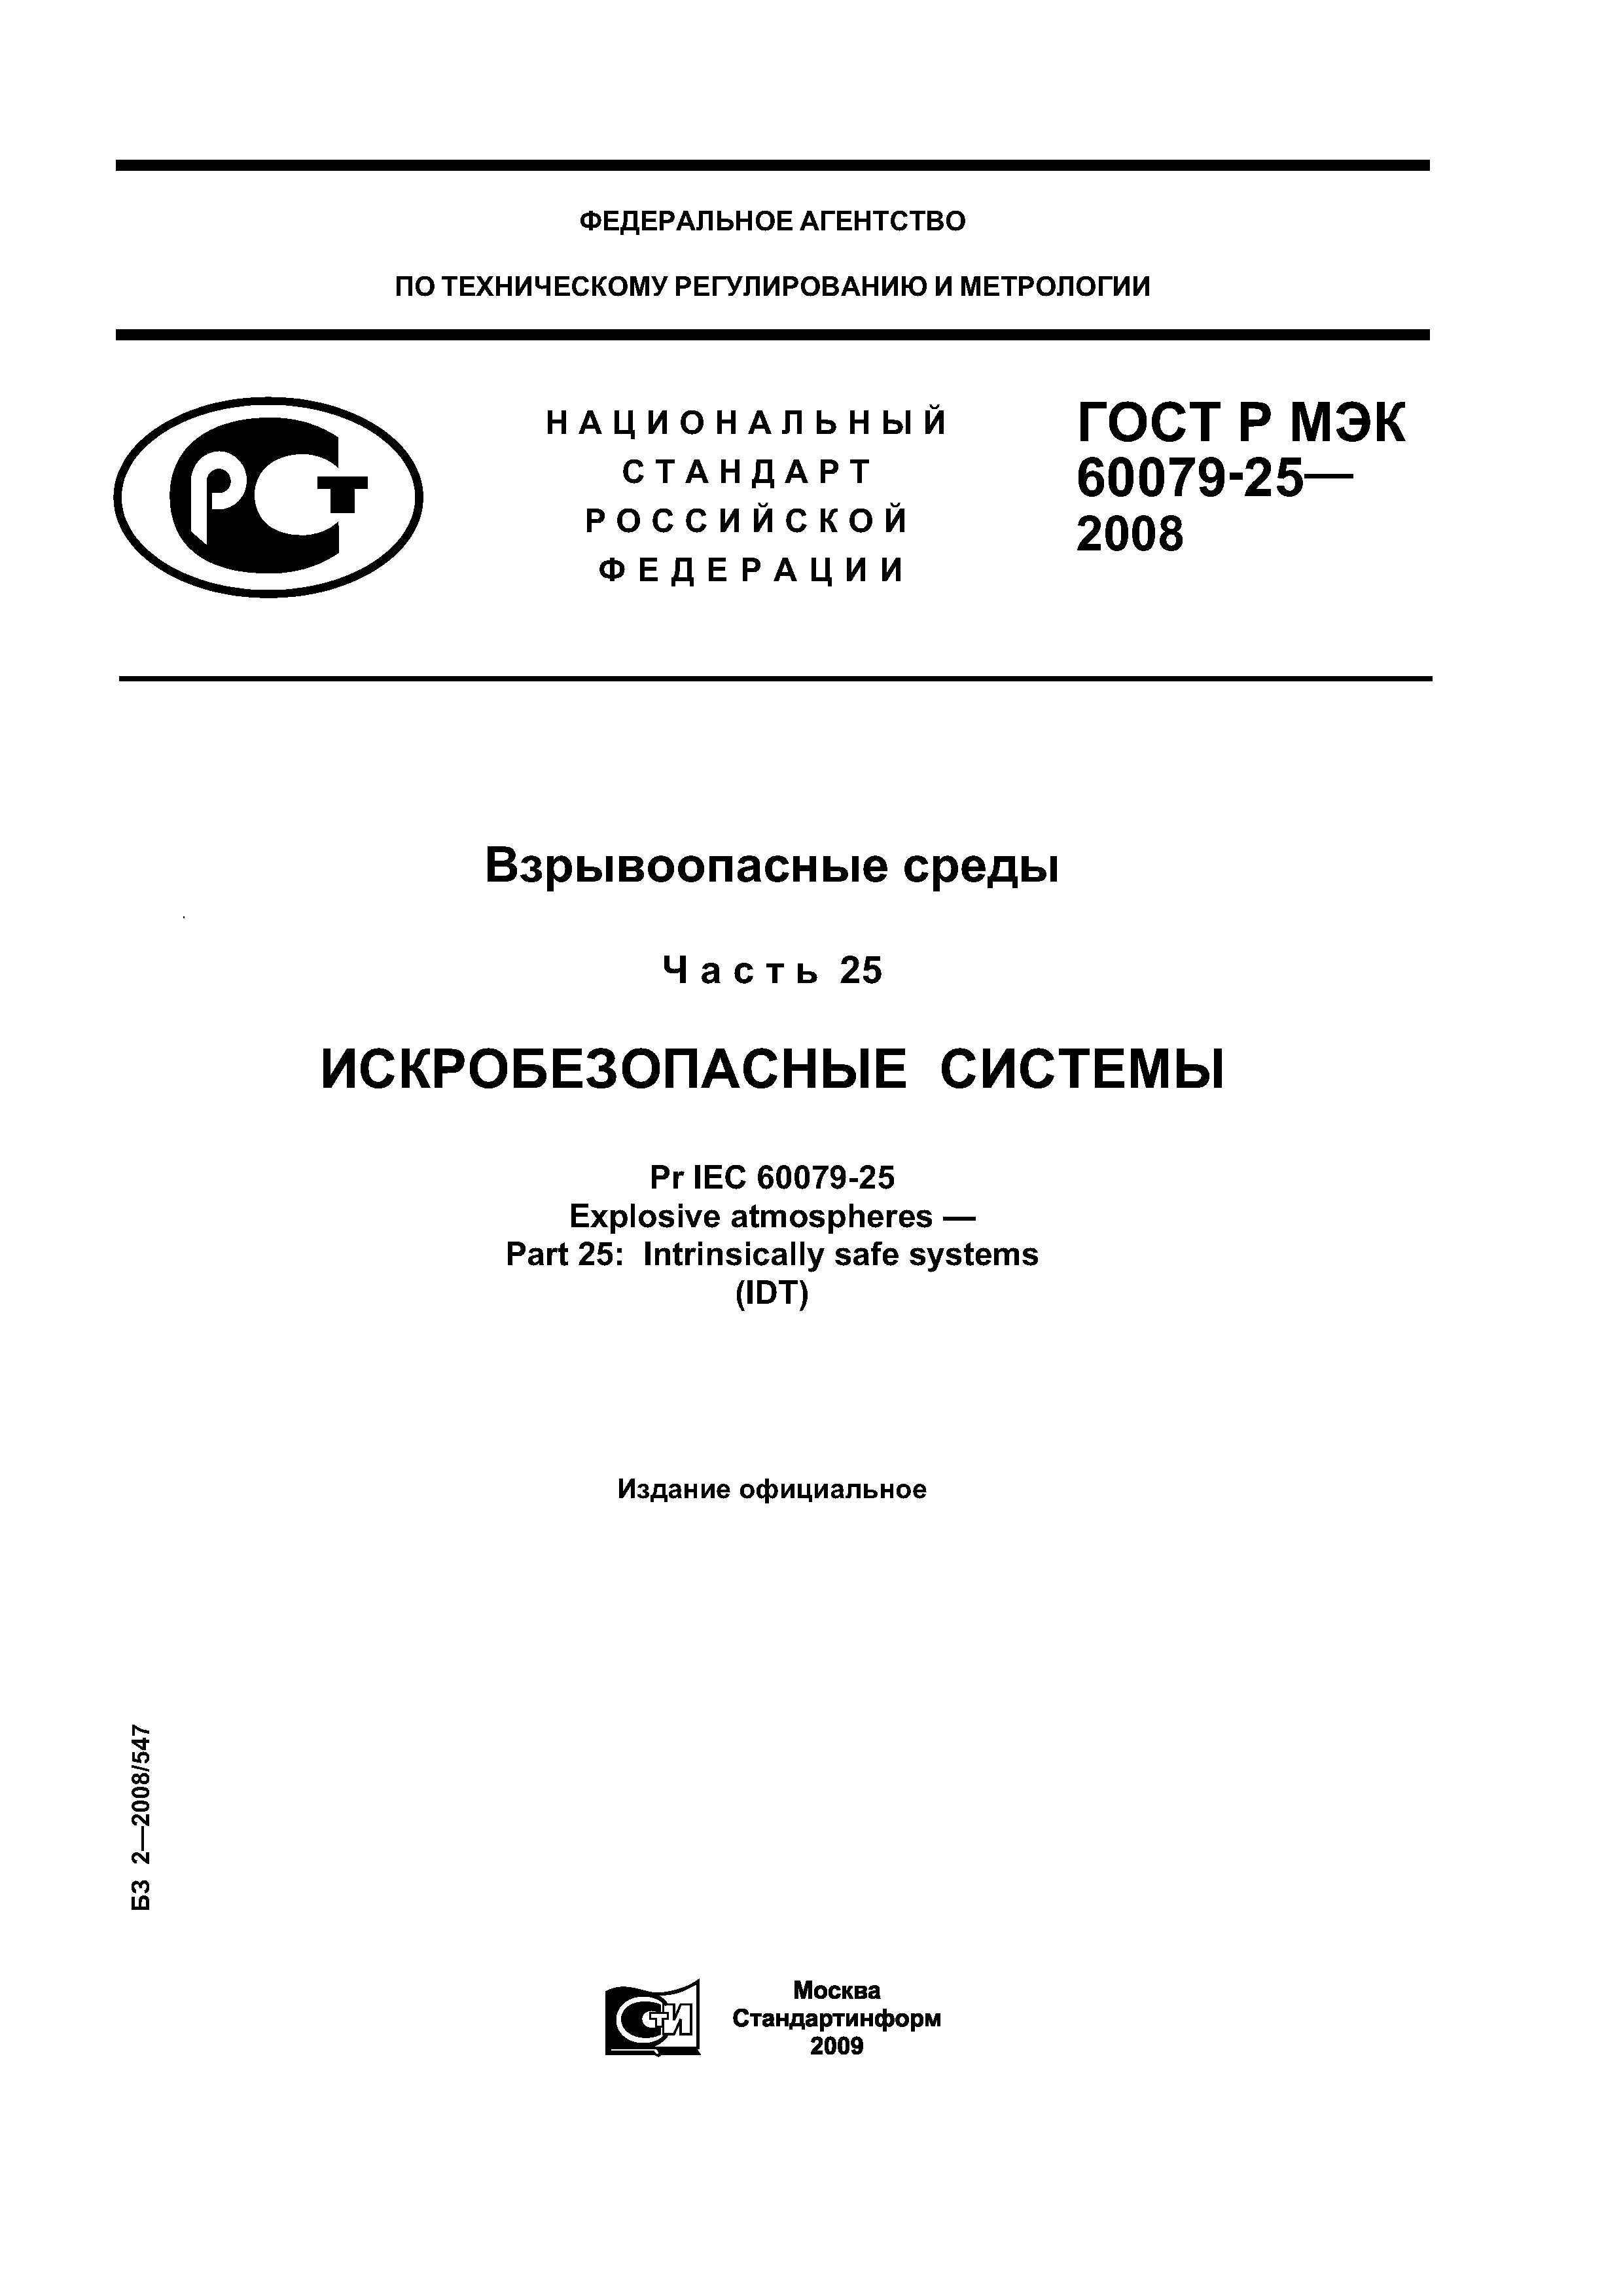 ГОСТ Р МЭК 60079-25-2008